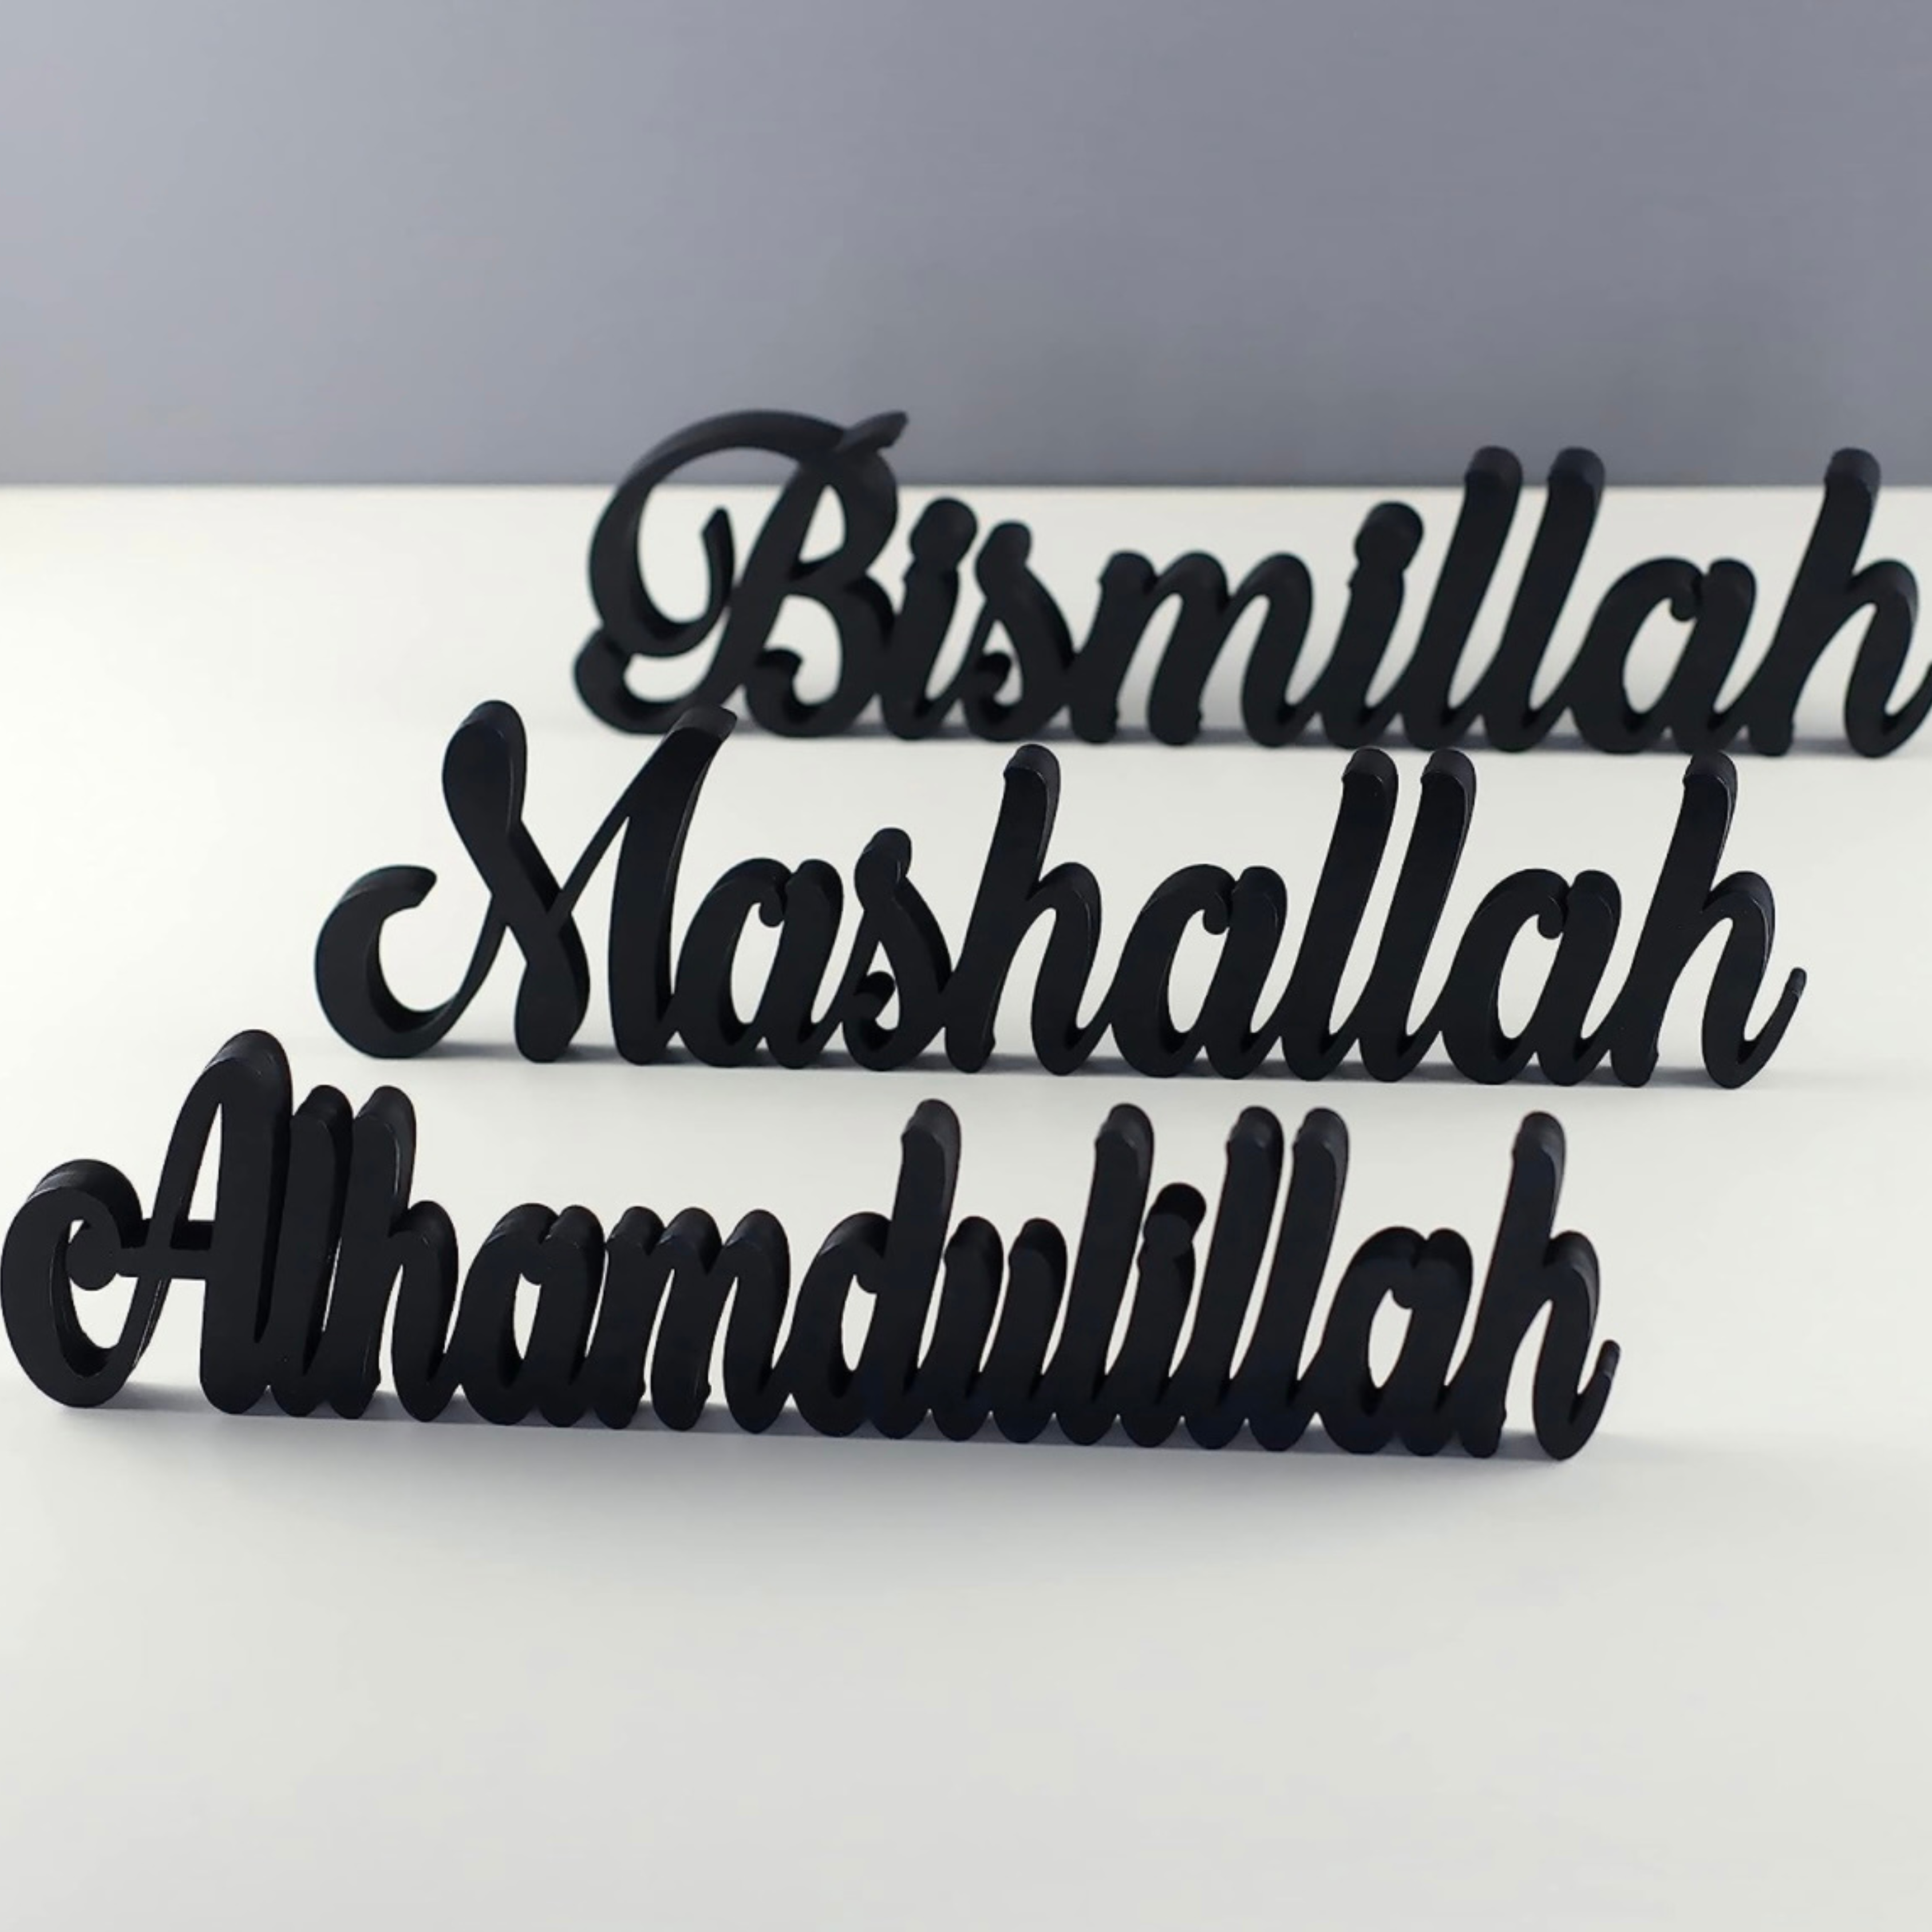 Alhamdulillah, Bismillah, Mashallah Table Decor Set of 3 (Black)